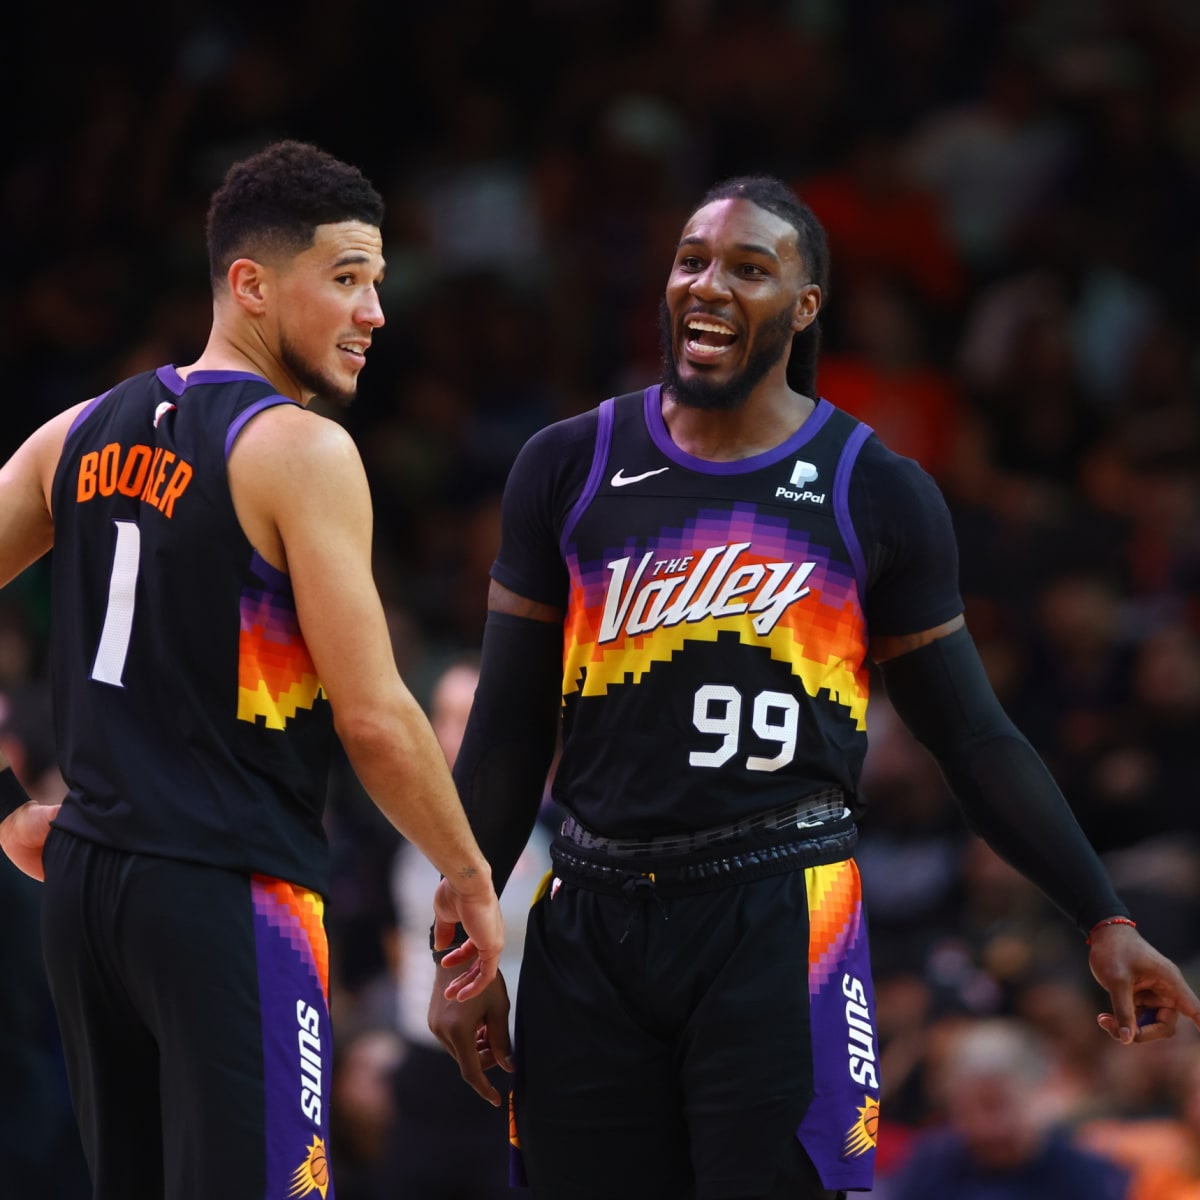 Phoenix Suns uniforms: Suns Valley City Edition jerseys divide NBA Twitter